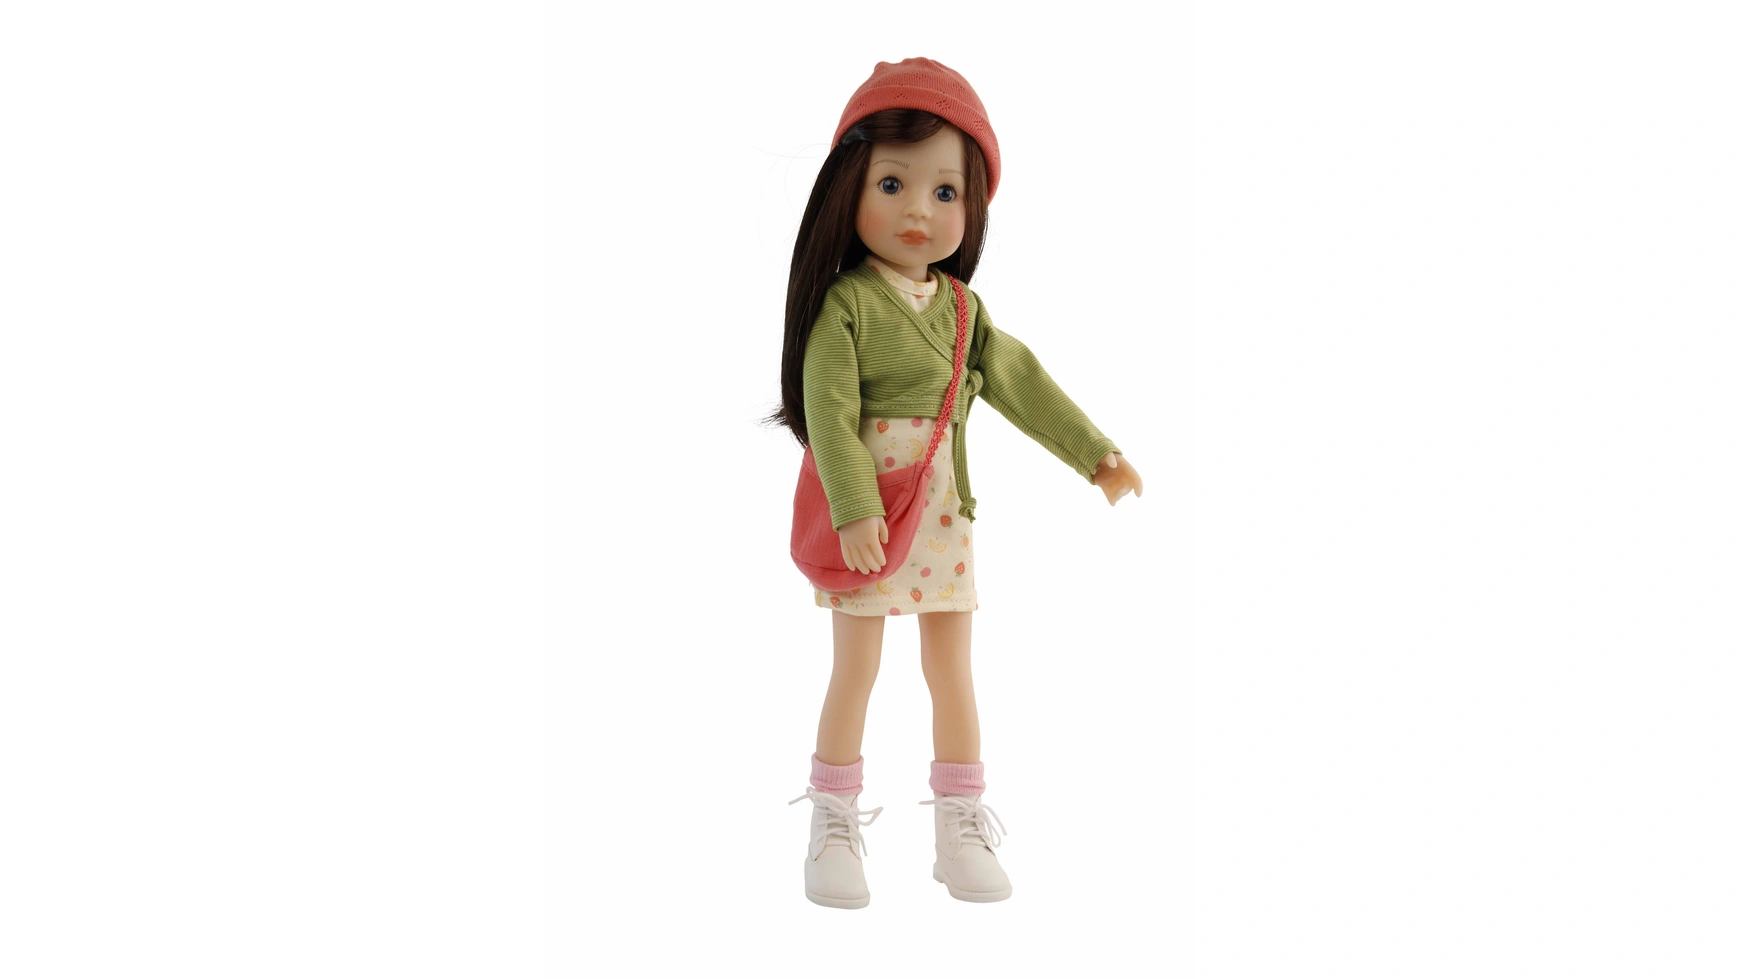 Schildkroet-Puppen Стоячая Кукла Йелла 46 см каштановые волосы, одежда желтая и зеленая/красная де ламбийи и я люблю музыку